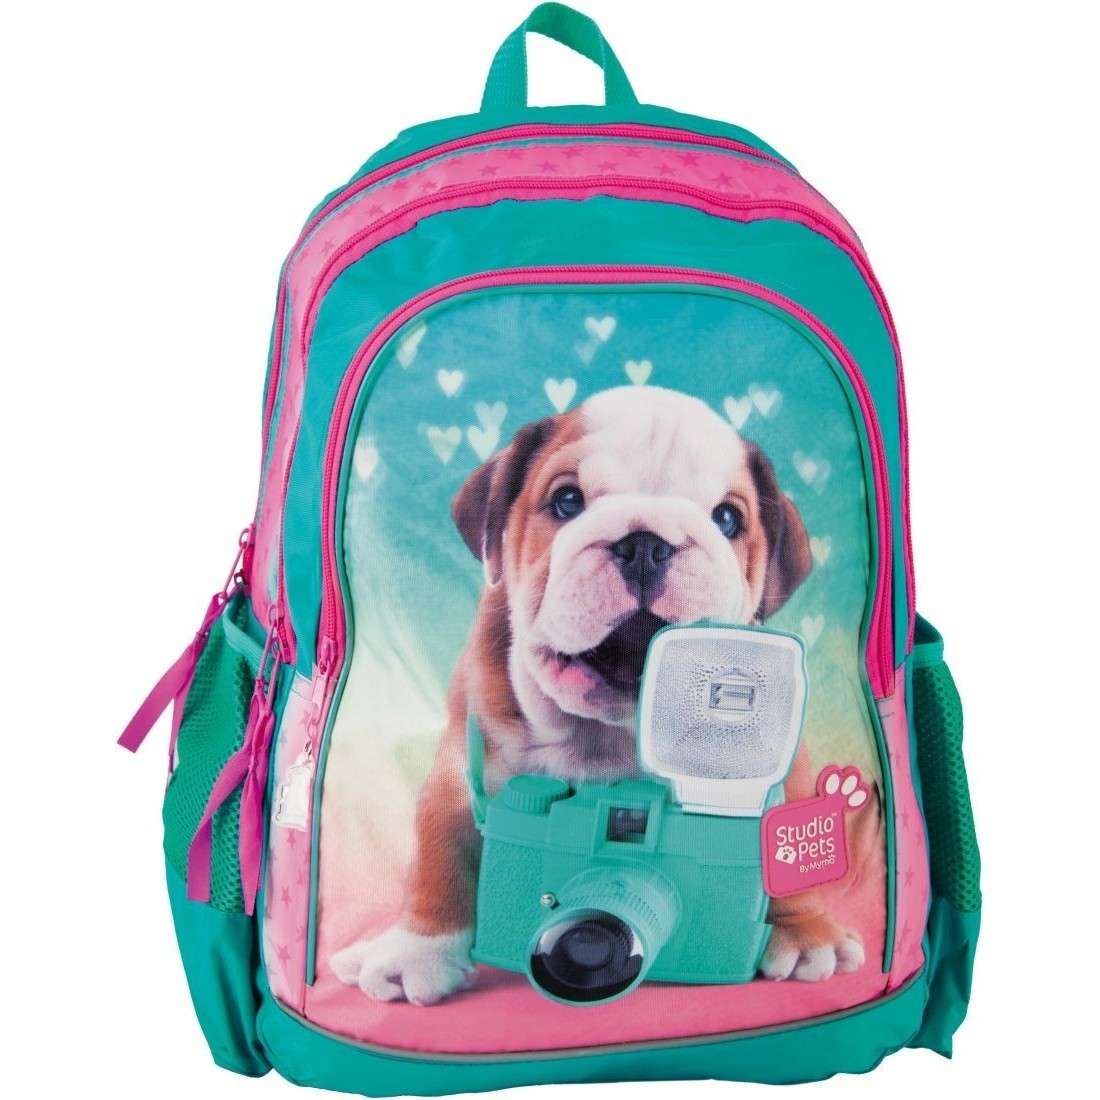 Z pet. Рюкзаки с собаками для девочек для школы. Игрушка собака с рюкзаком. Рюкзак с собачкой в очках. Детская игрушка рюкзак собака.